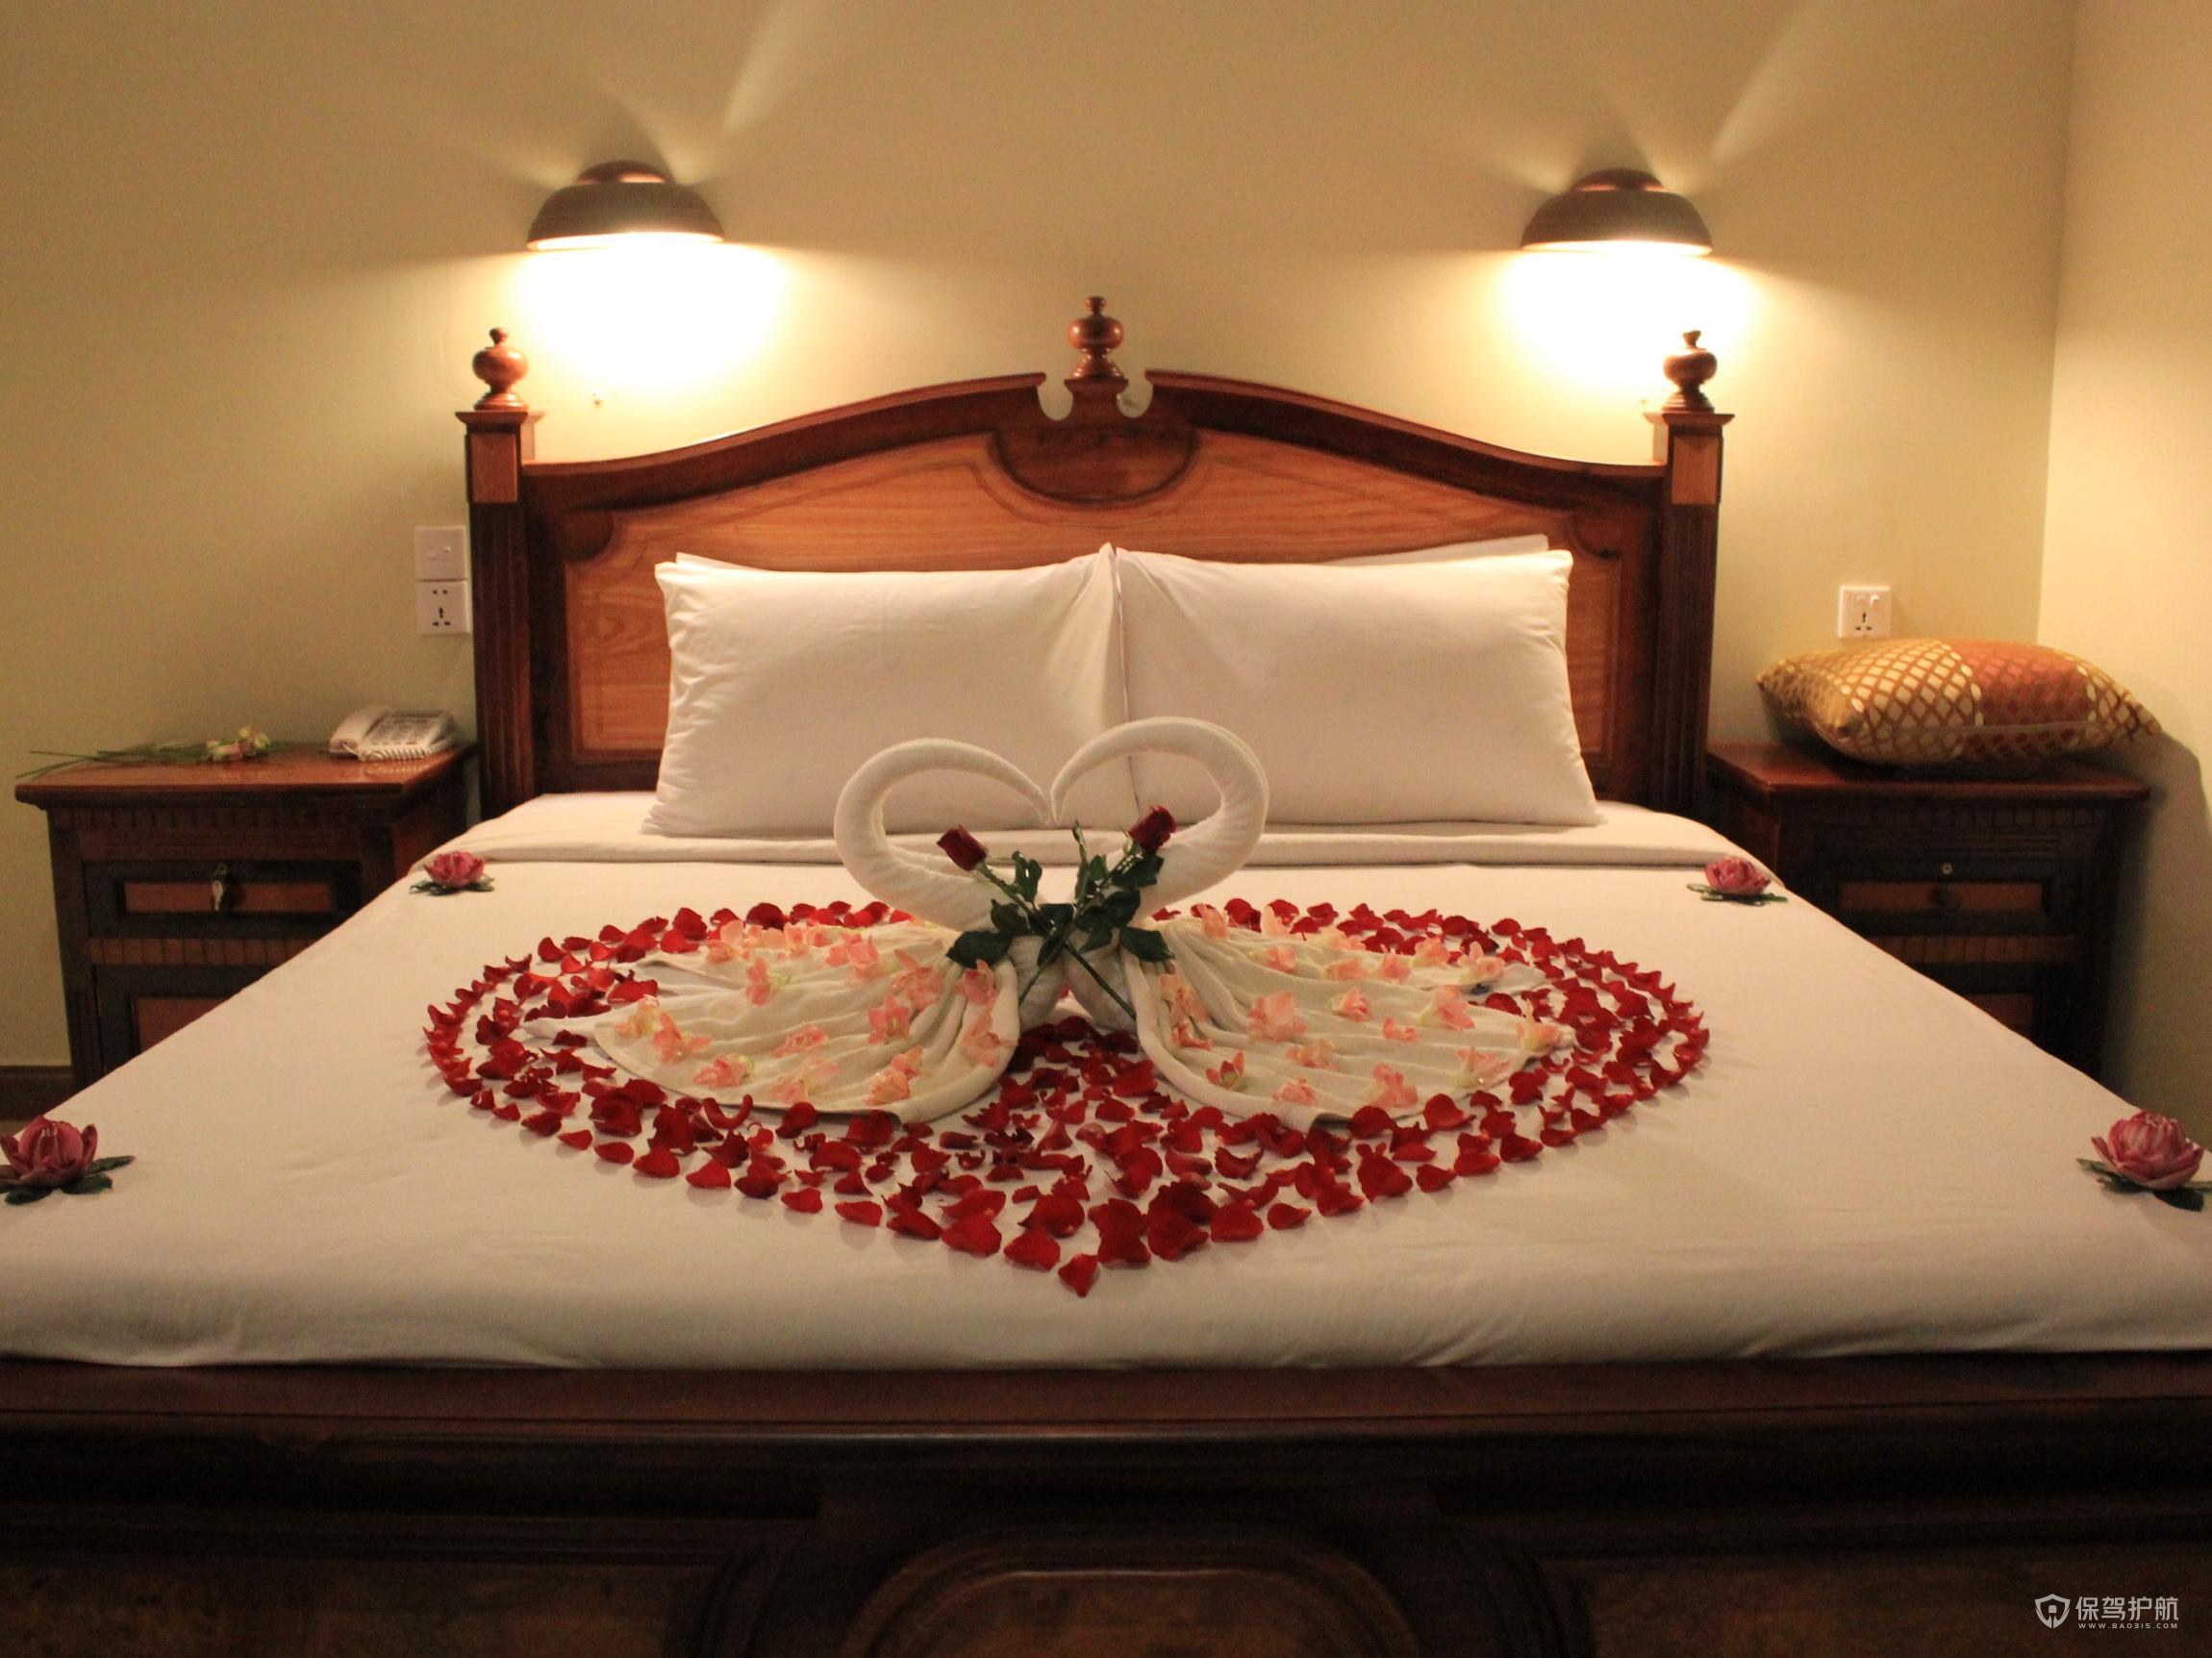 酒店创意客房床上布置图片-保驾护航装修网